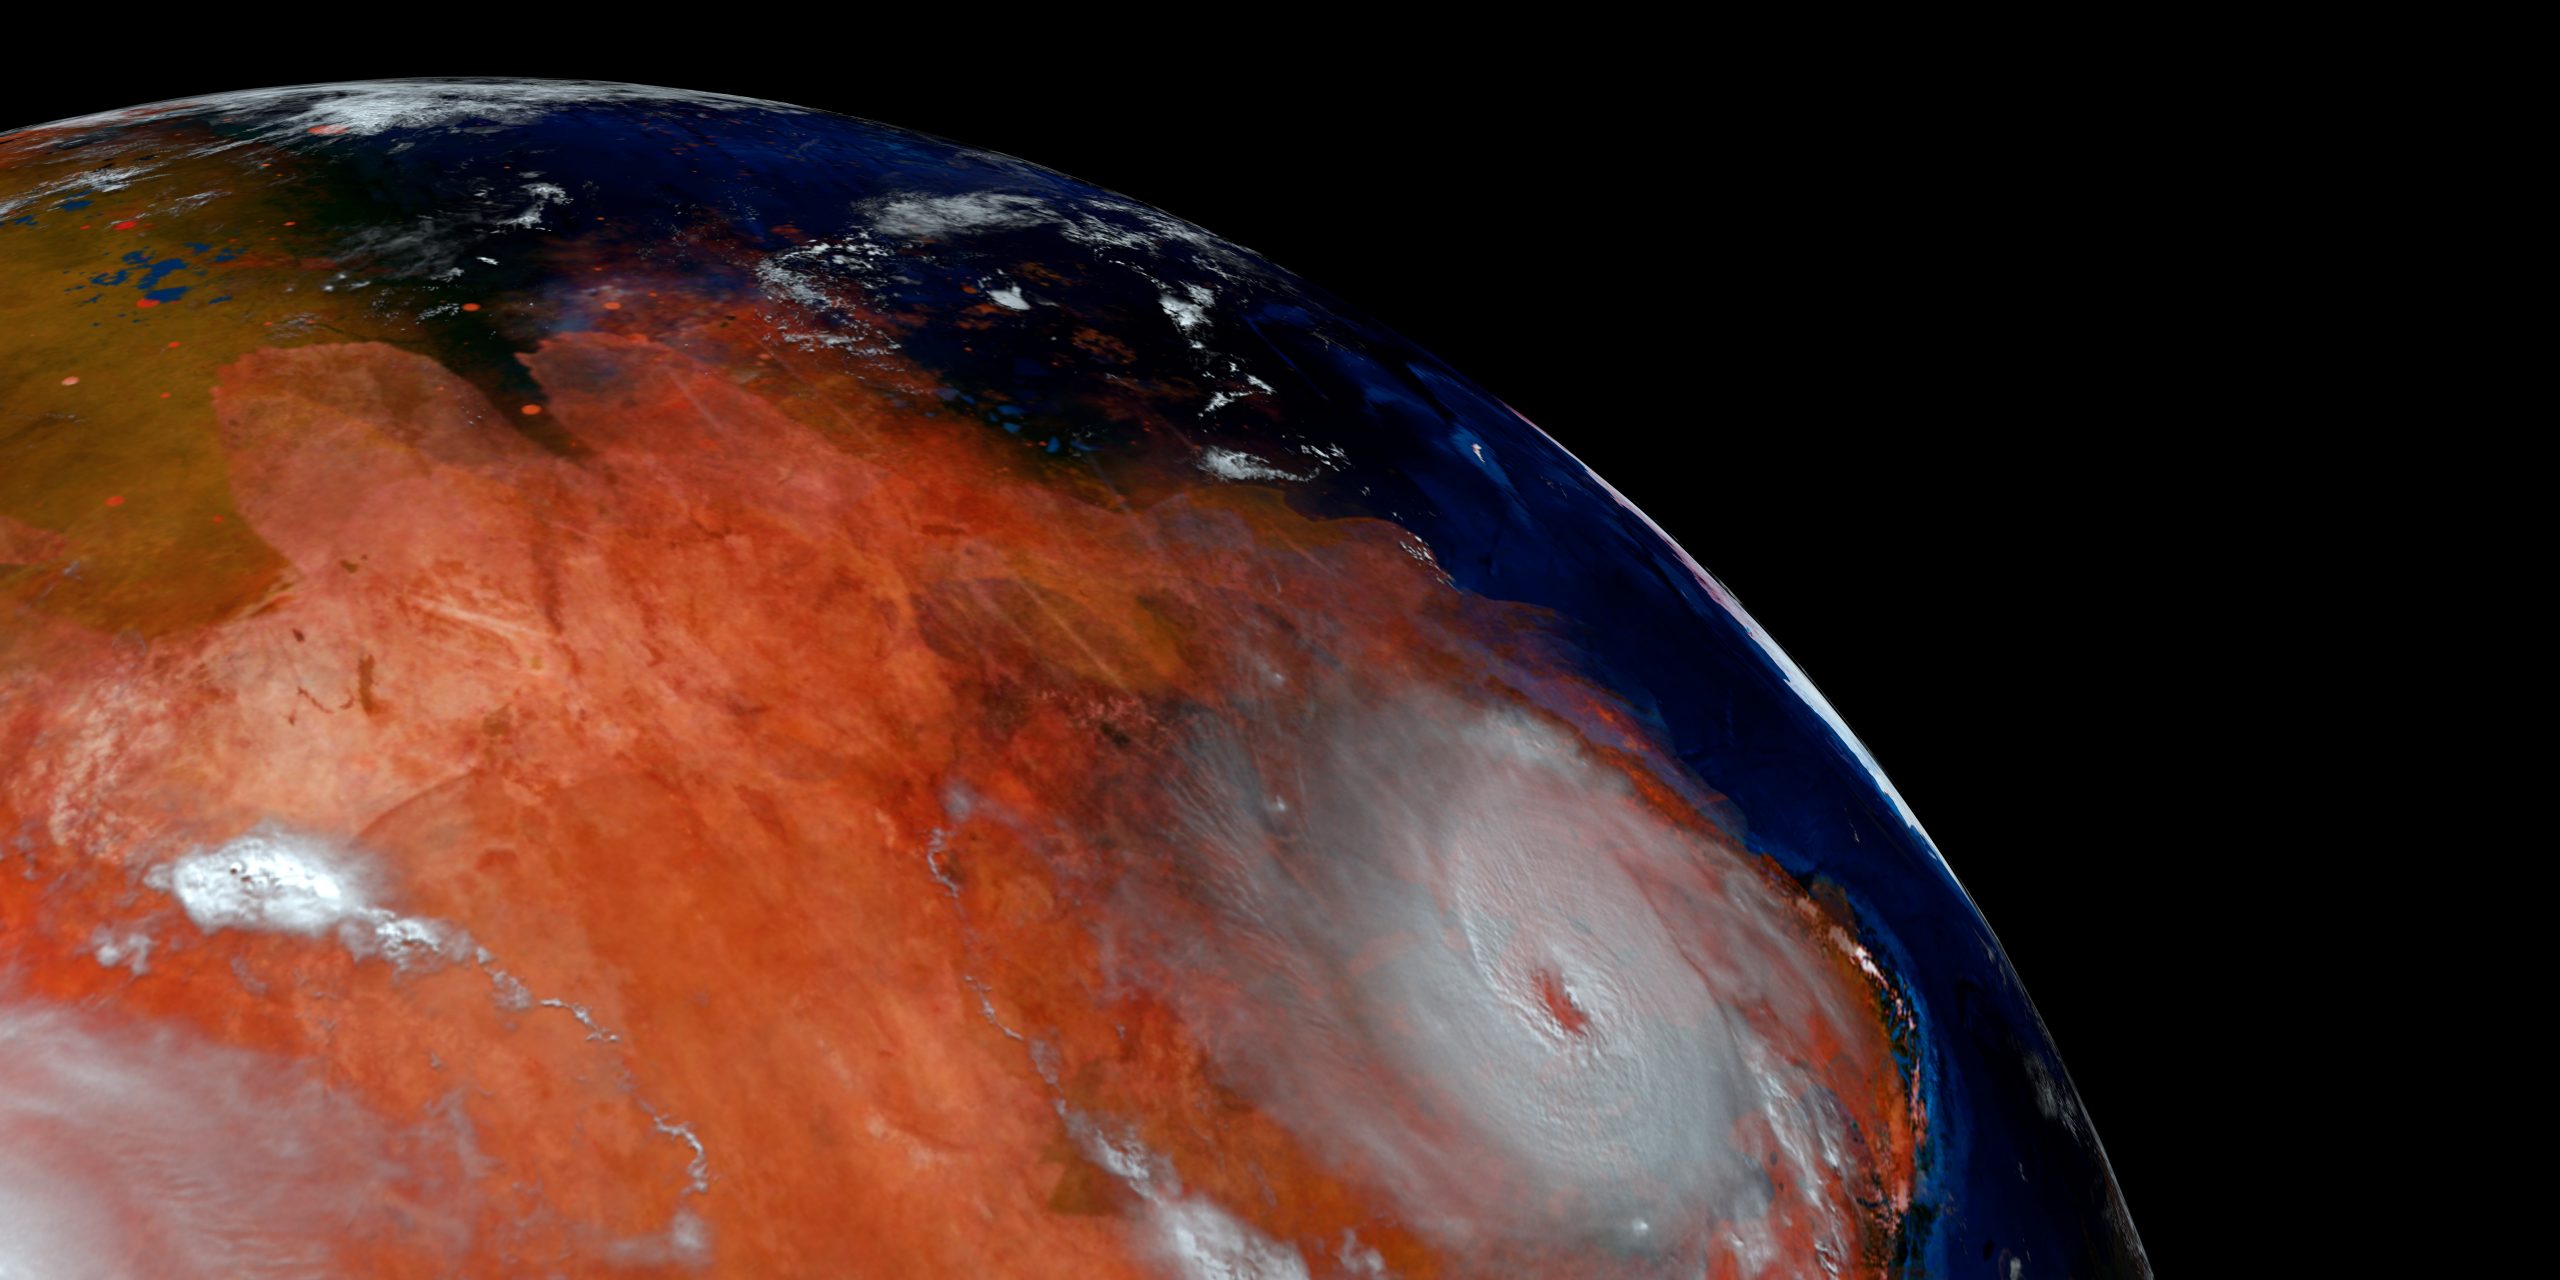 Когда формировалась ранняя Земля, Марс был влажным миром, способным поддерживать жизнь